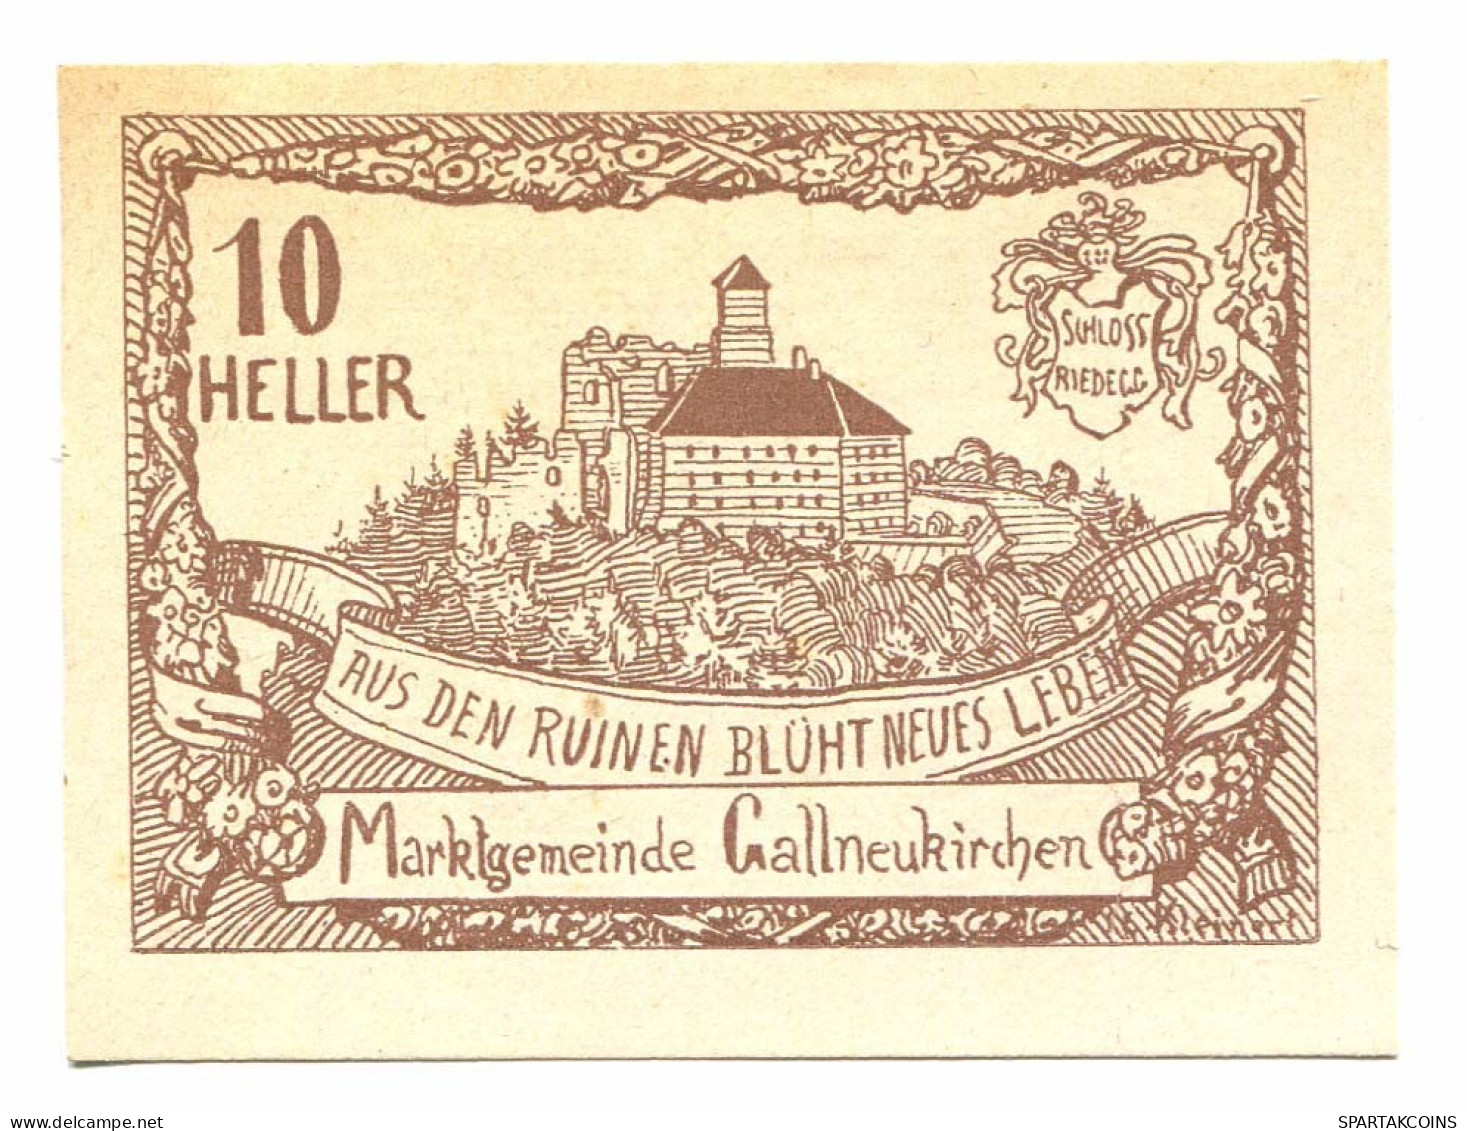 10 Heller 1920 GALLNEUKIRCHEN Österreich UNC Notgeld Papiergeld Banknote #P10419 - [11] Local Banknote Issues